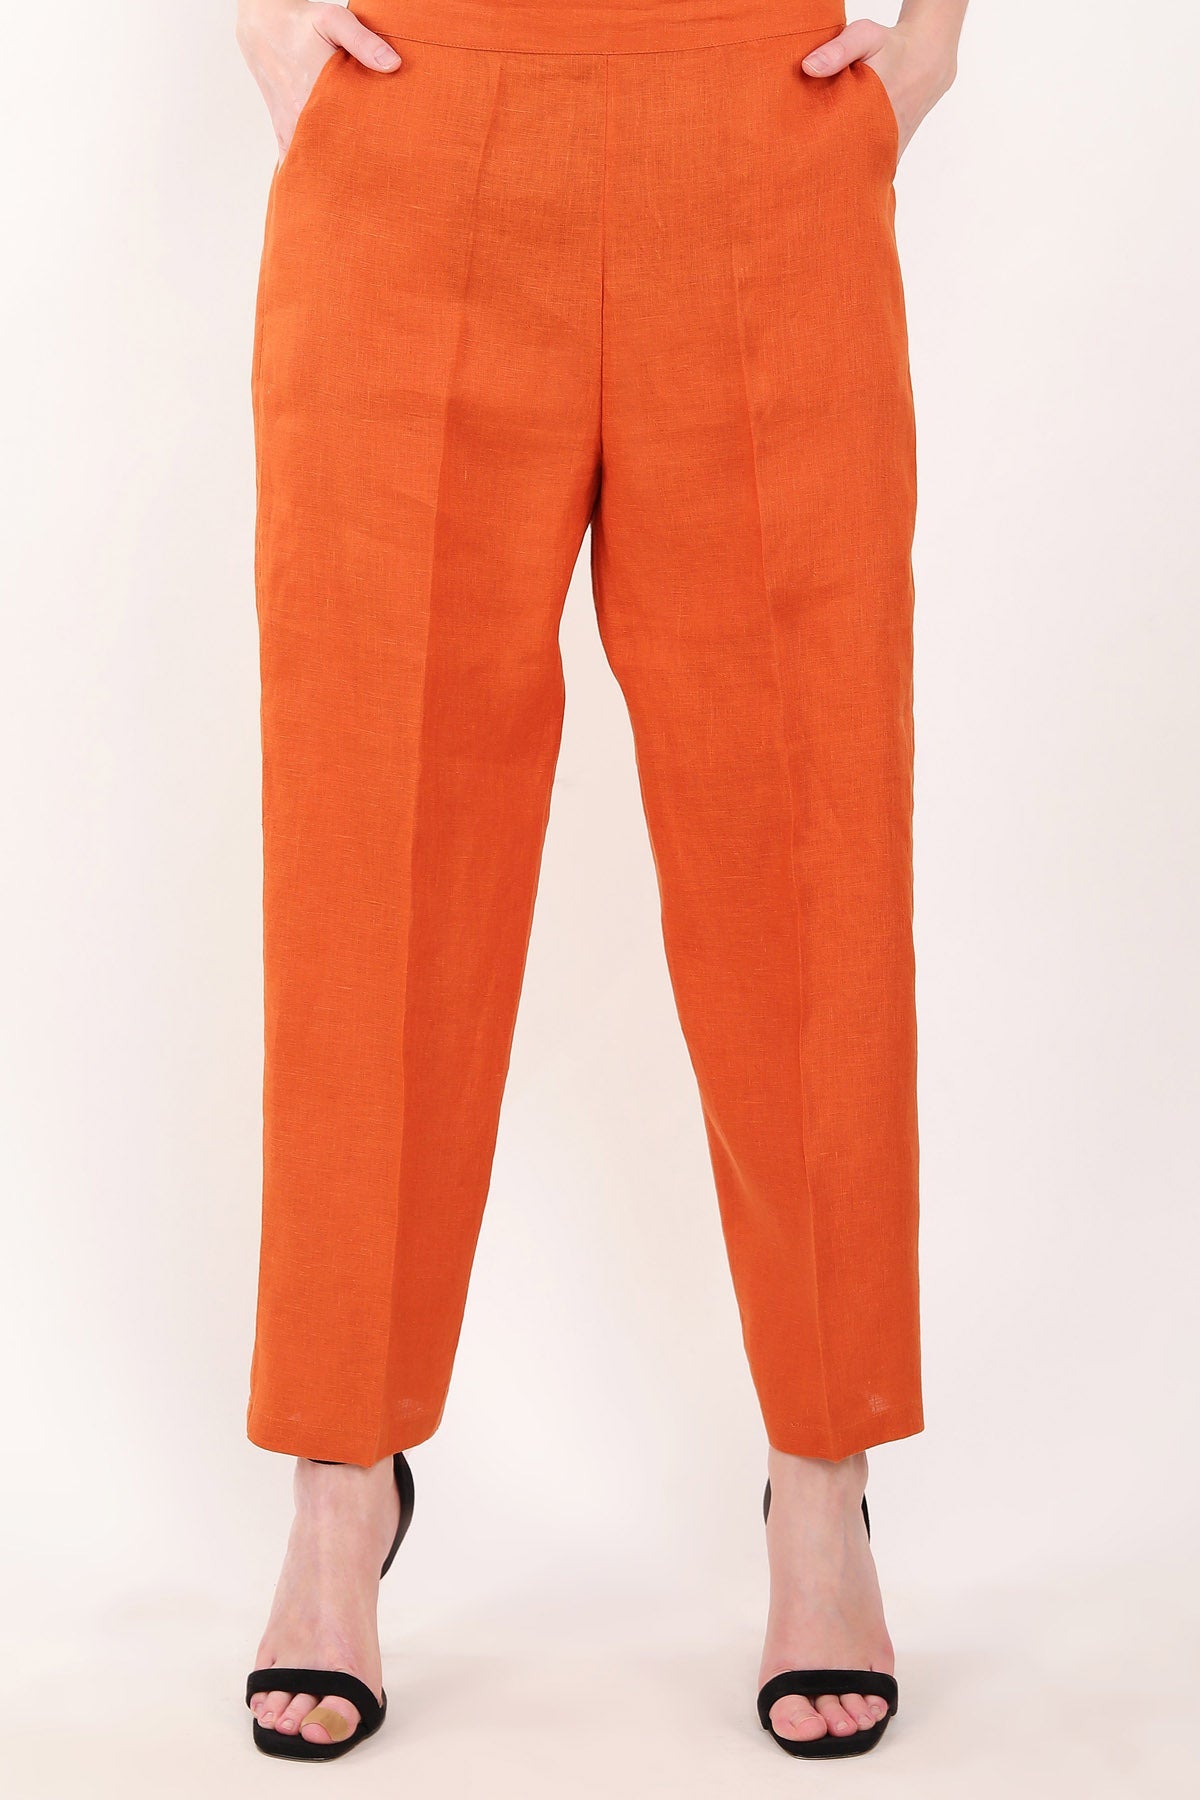 Linen Bloom Orange Linen Straight Pants for women online at ScrollnShops